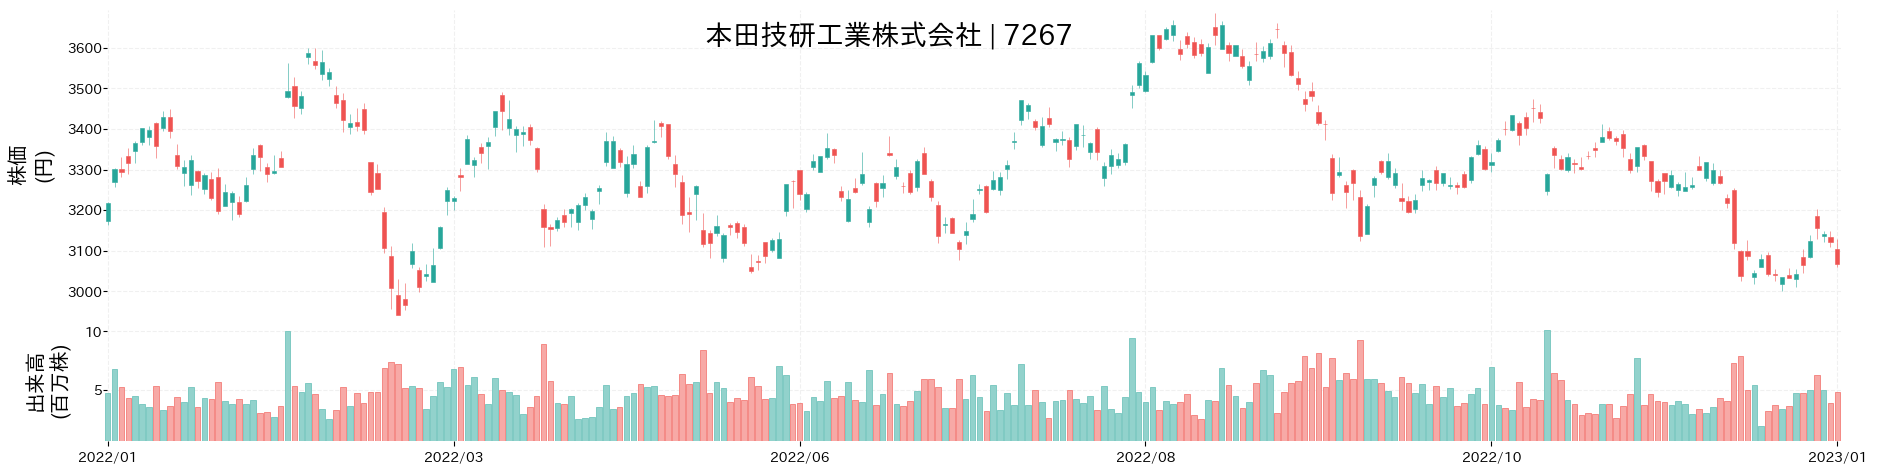 本田技研工業の株価推移(2022)